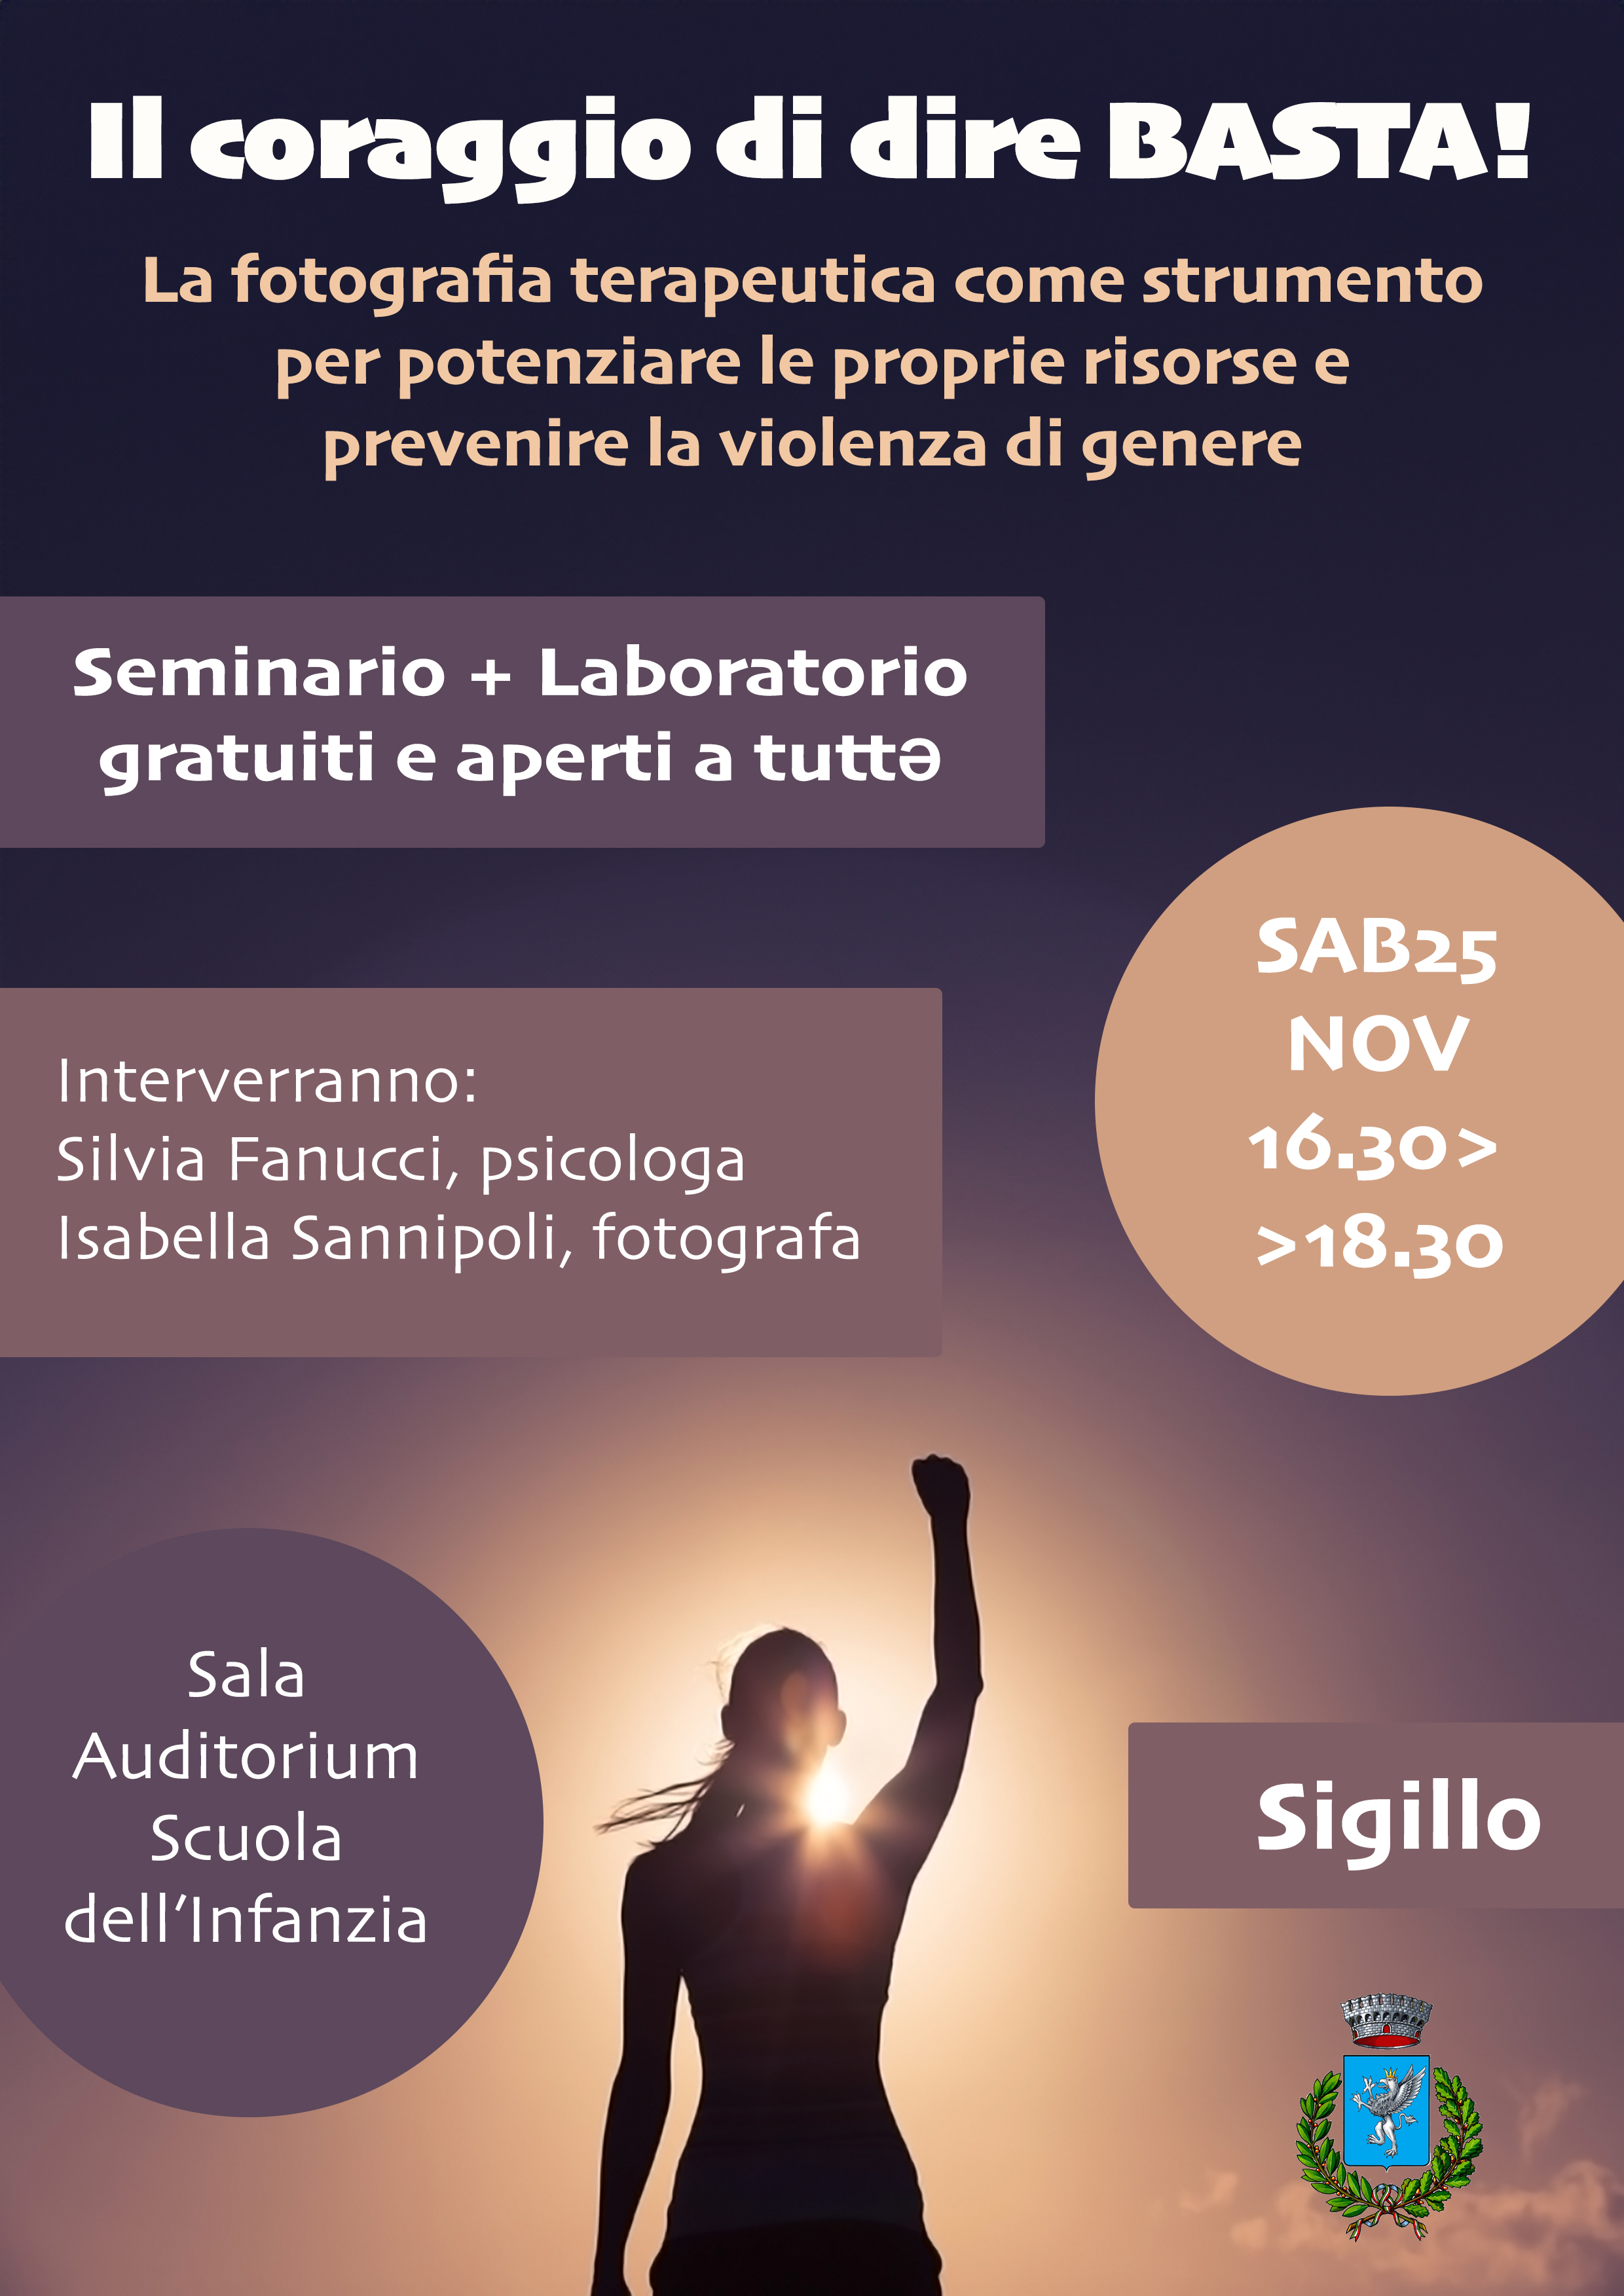 Giornata contro violenza sulle donne – Sigillo, “Il coraggio di dire basta!” un seminario aperto a tutta la cittadinanza